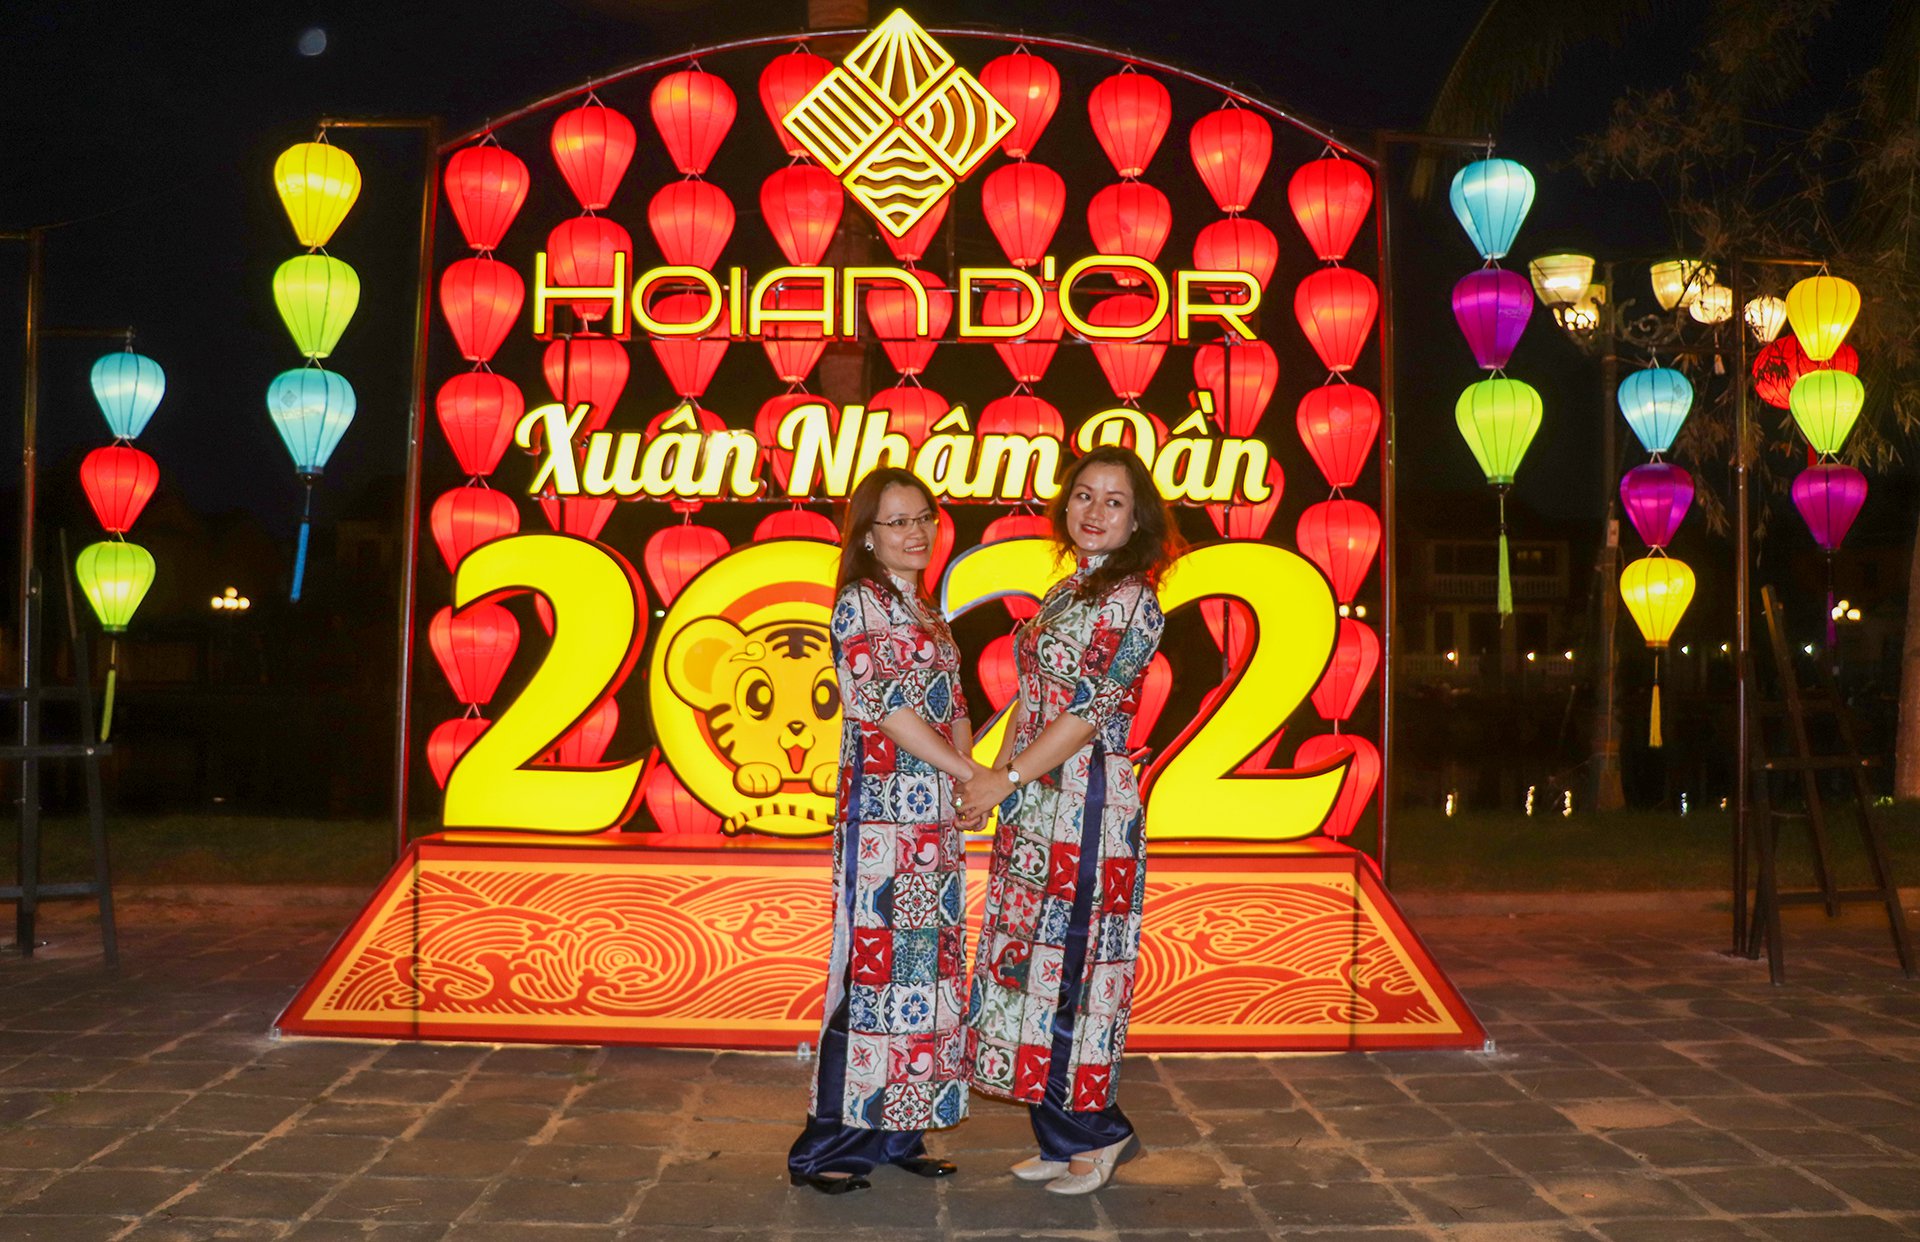 Resort o Hoi An kin phong dip tet nguyen dan anh 2  - 6 - Hội An đón lượng khách tăng đột biến dịp Tết Nguyên đán